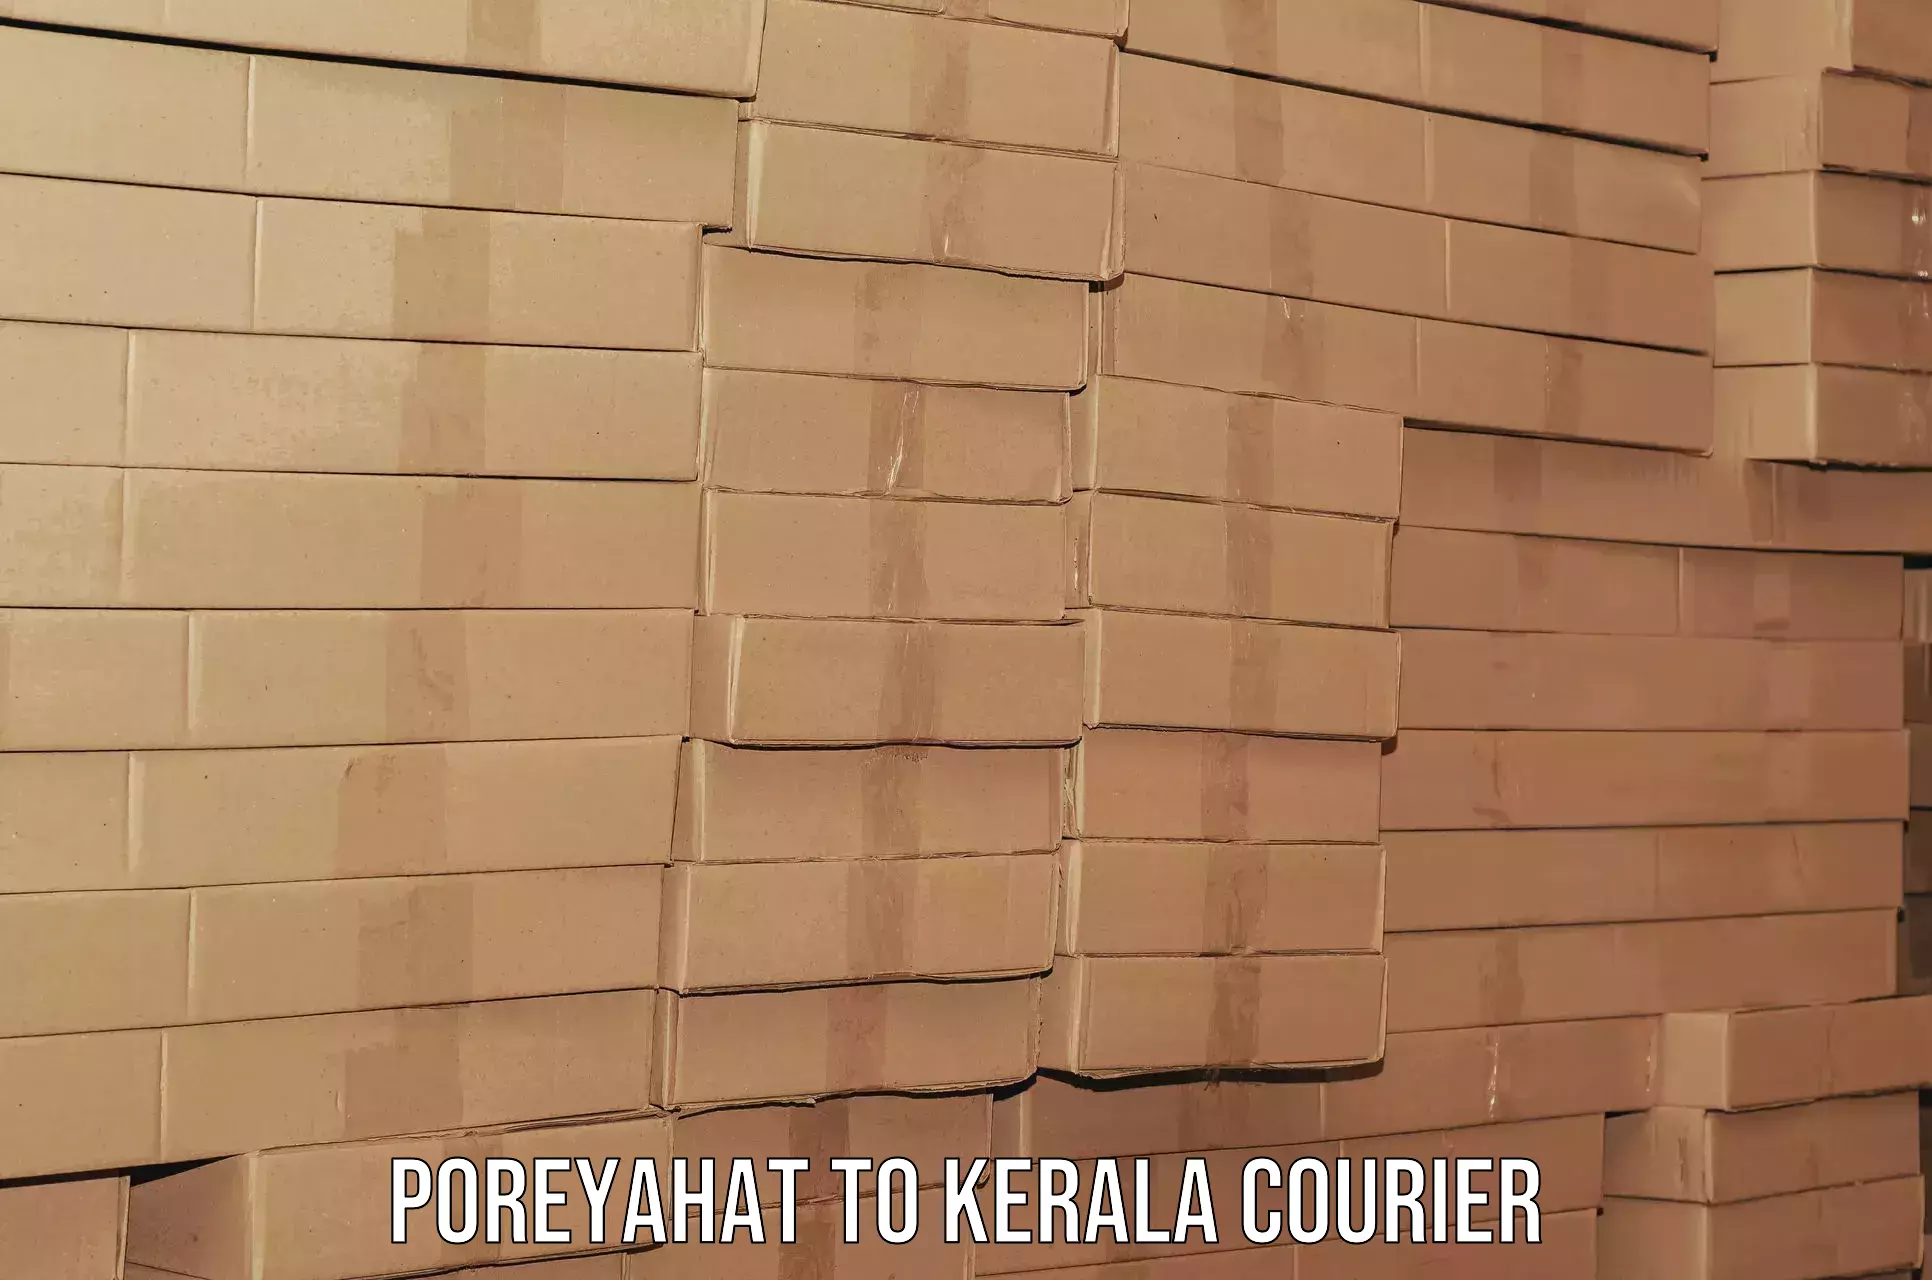 Home goods moving company Poreyahat to Adur Kla